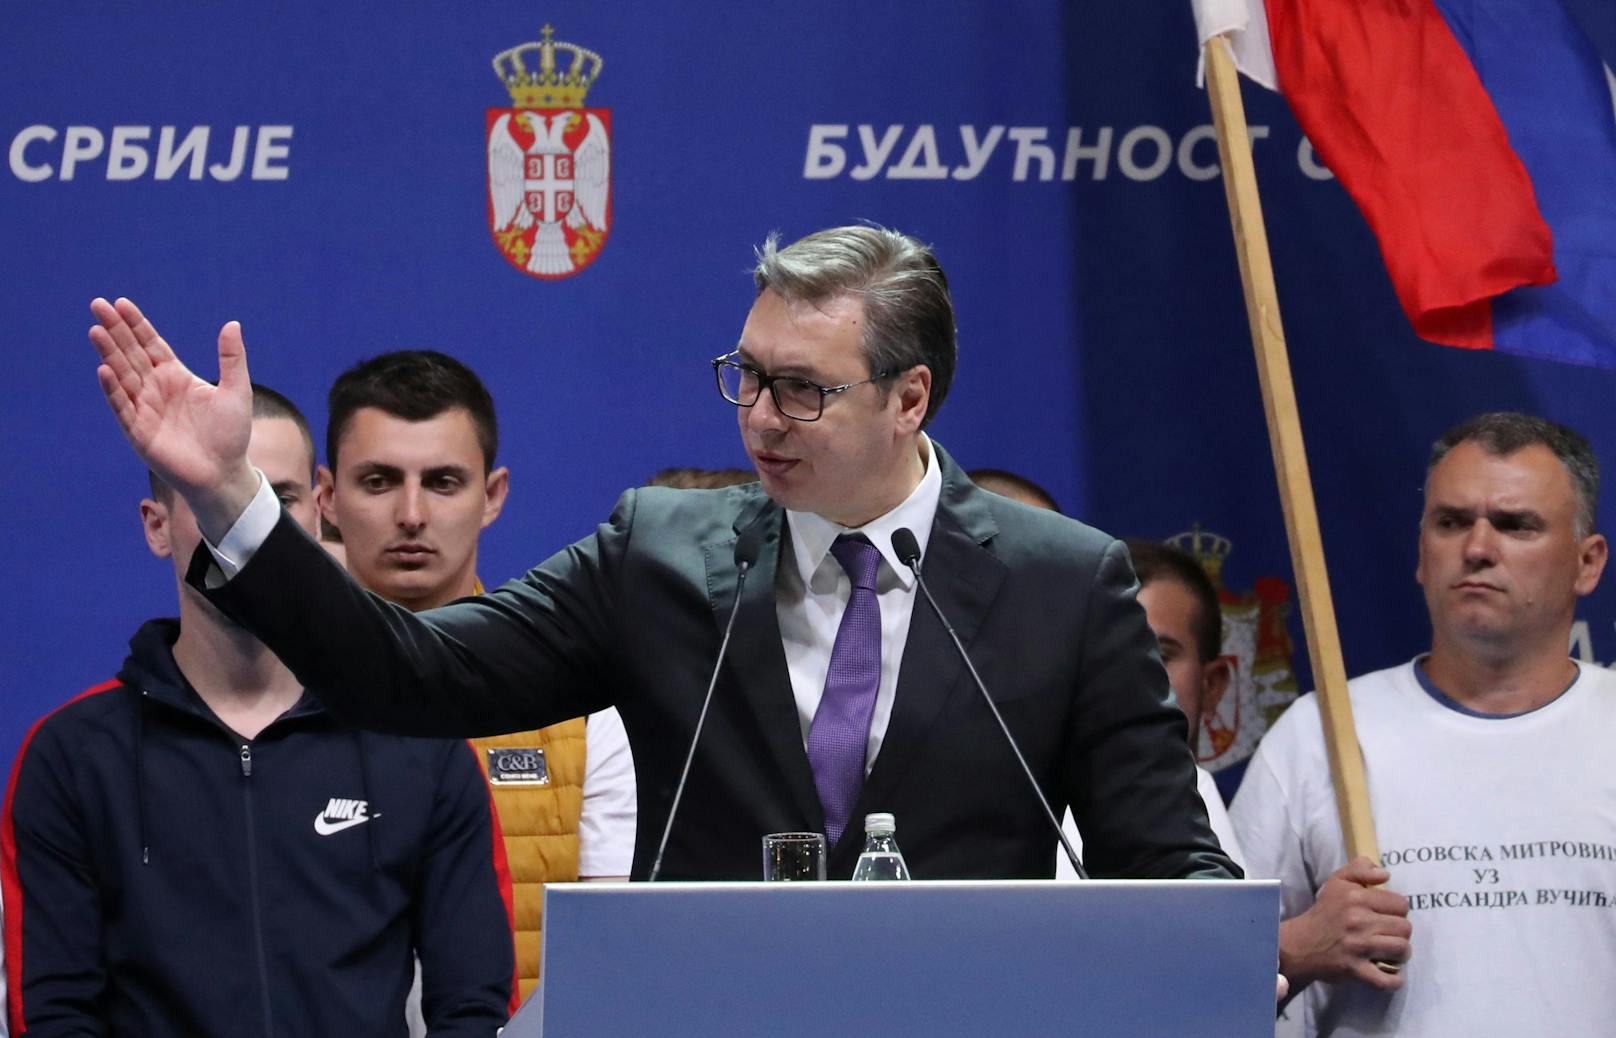 Serbiens Präsident will Todesstrafe wieder einführen